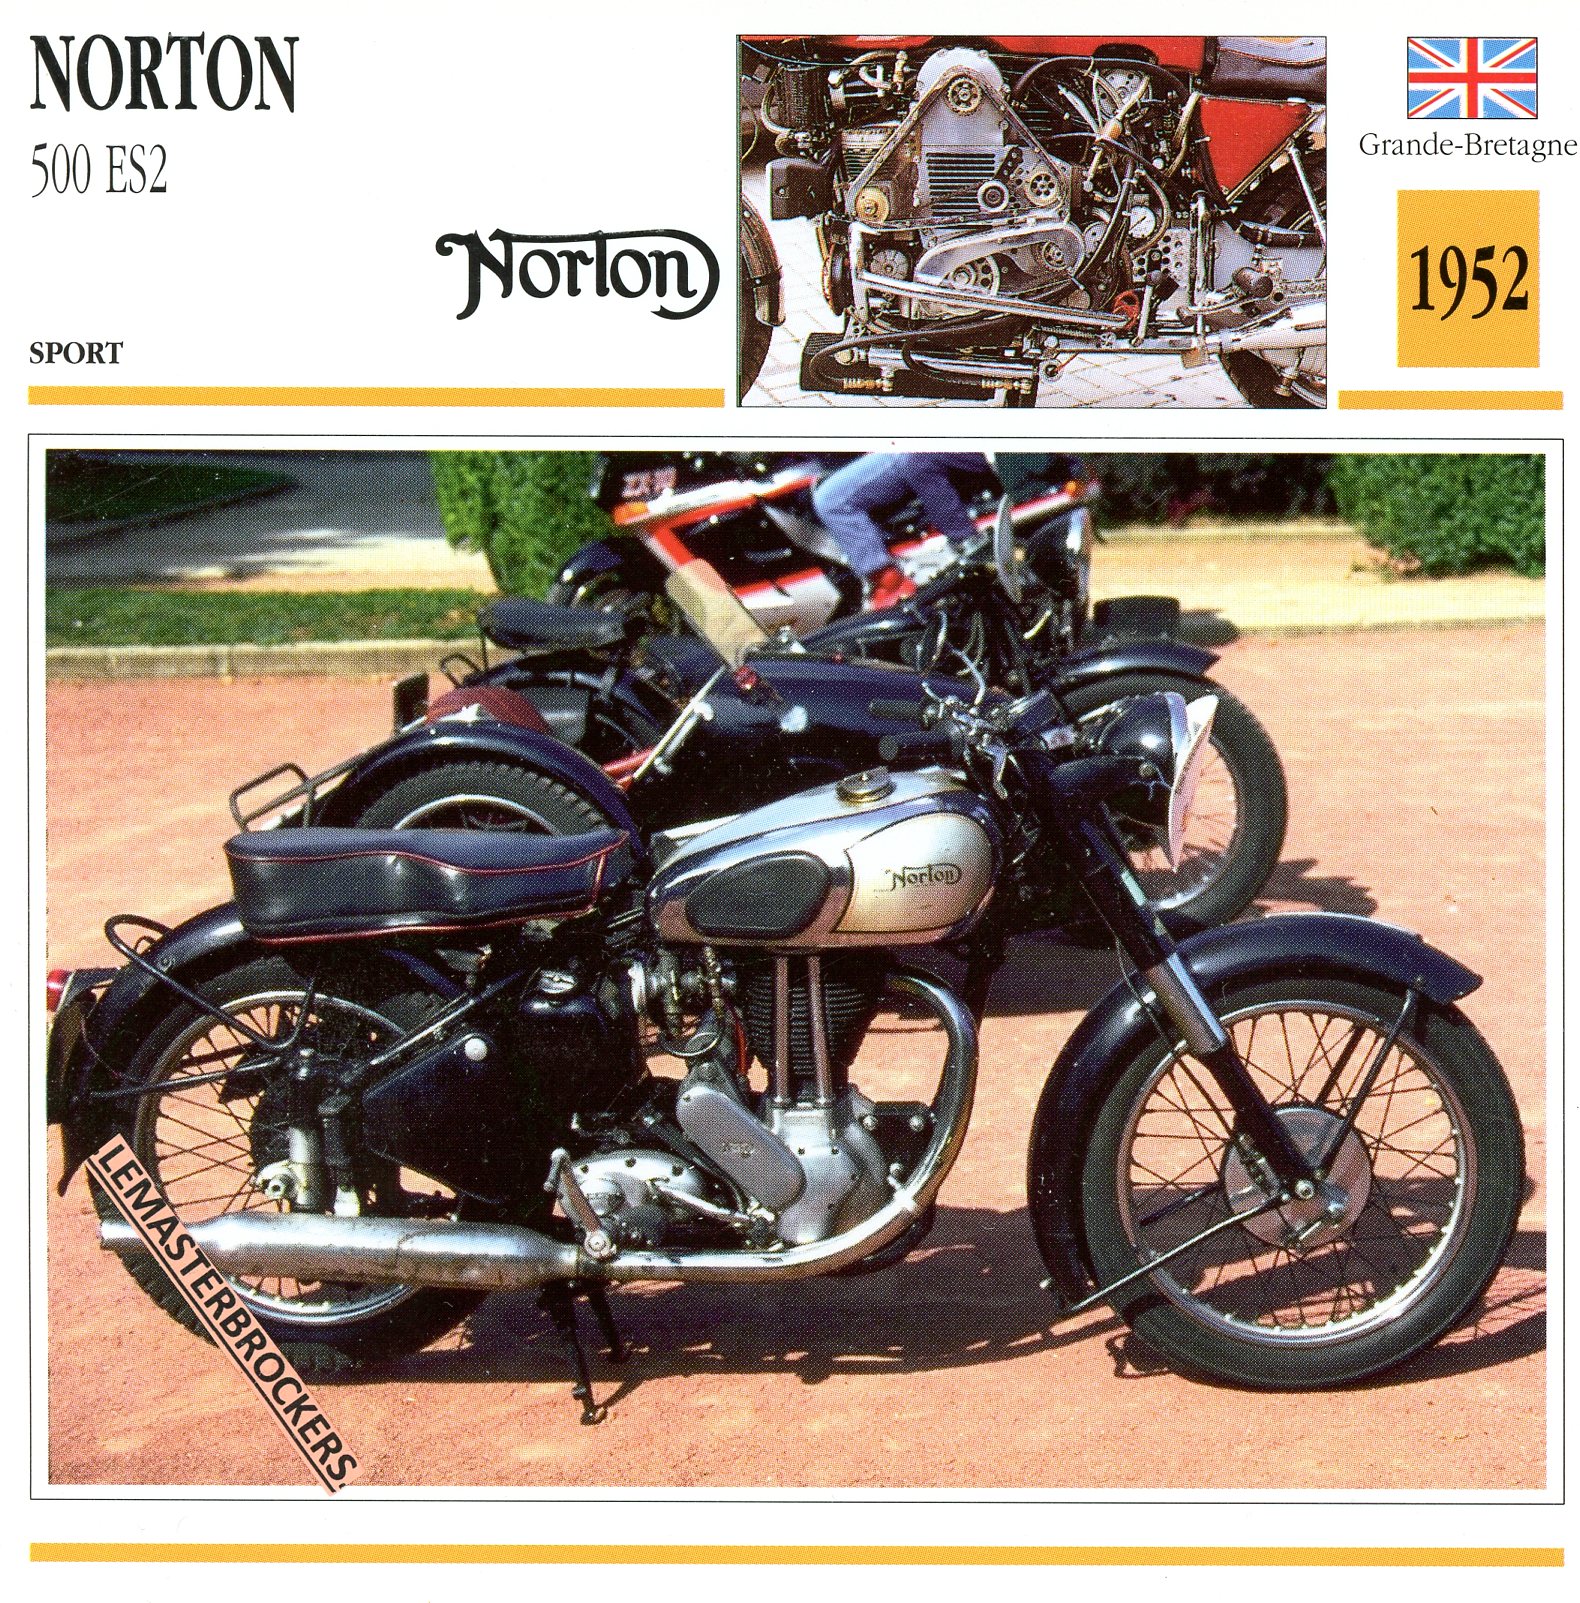 NORTON-500-ES2-1952-FICHE-MOTO-ATLAS-lemasterbrockers-CARD-MOTORCYCLE